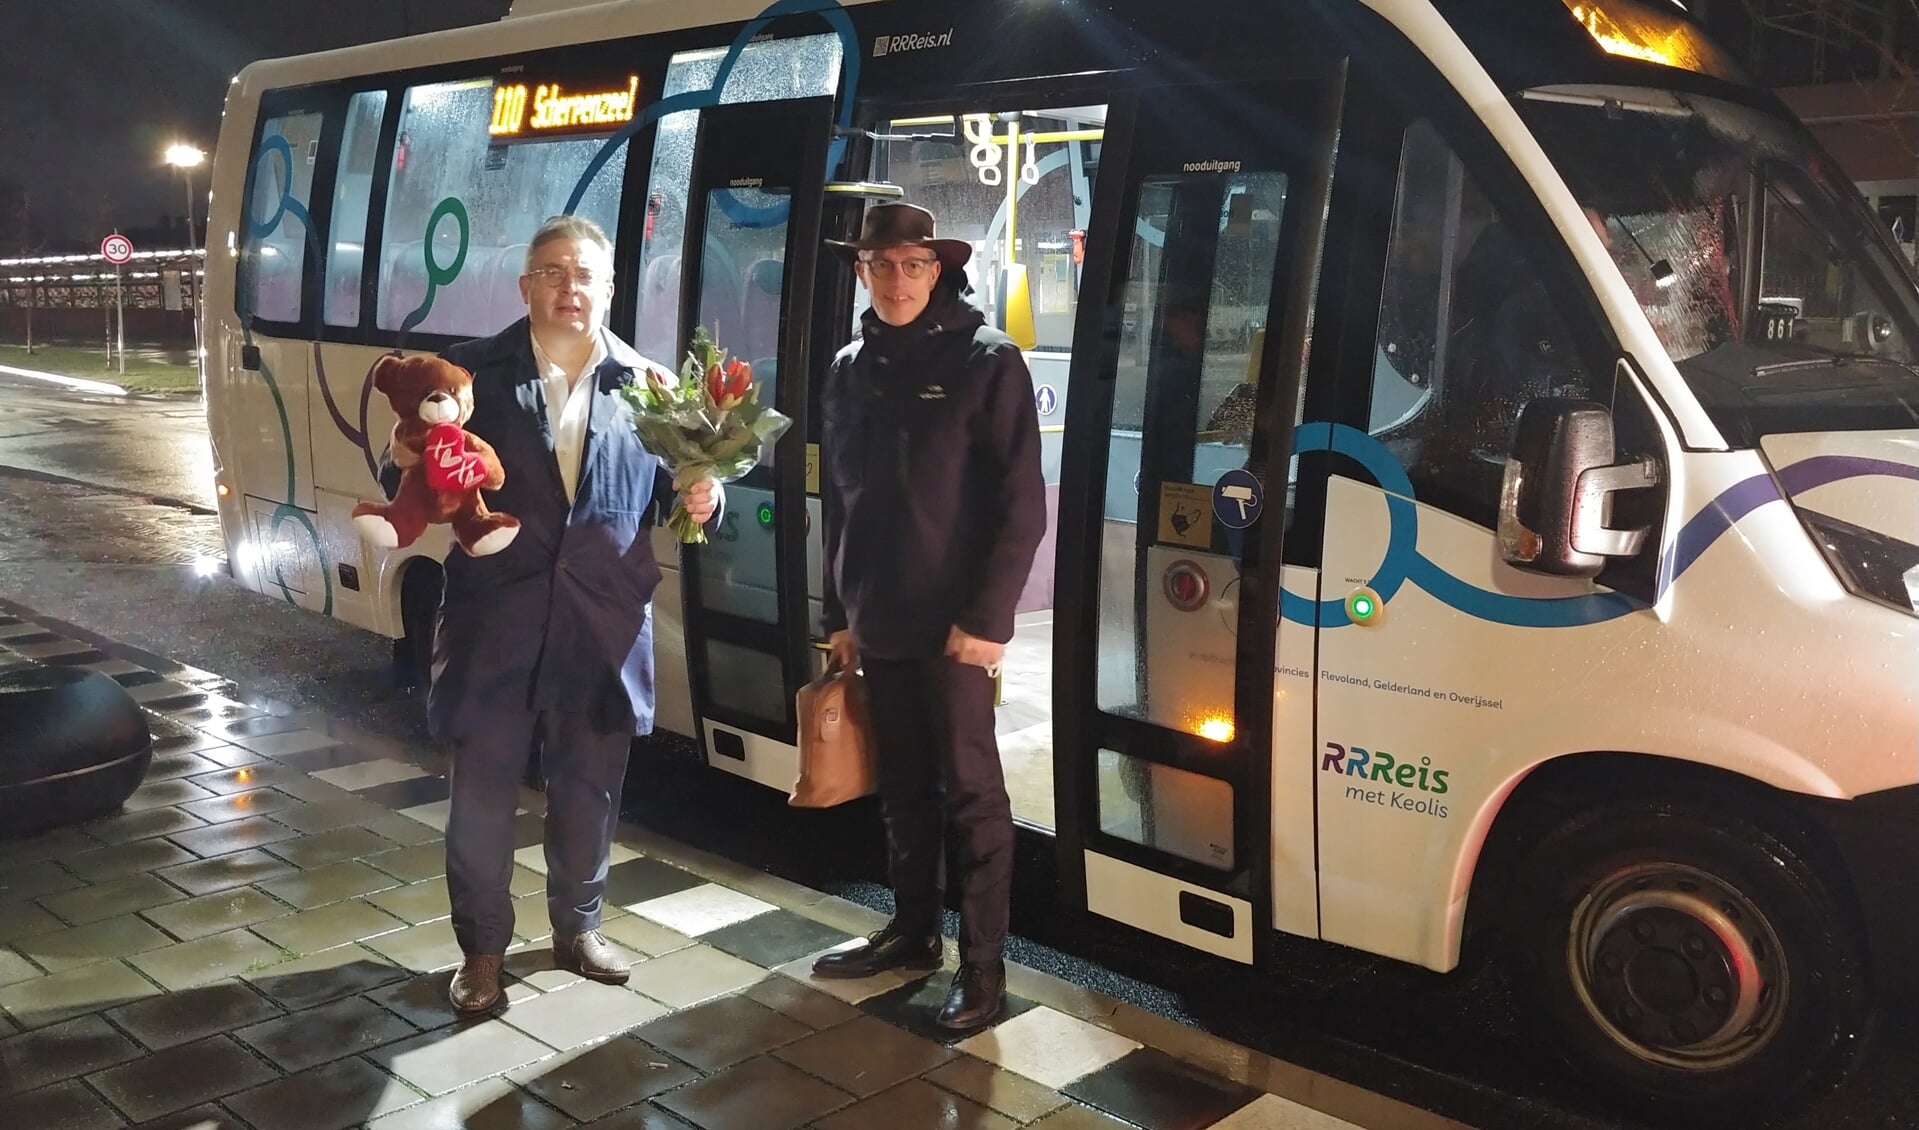 De wethouders Gerard van Deelen (Scherpenzeel) en Hans van Daalen (Barneveld) maakten maandagochtend samen met de nieuwe buslijn 110 een rit vanuit Scherpenzeel naar Barneveld. Daarna namen ze de bus terug naar Scherpenzeel.